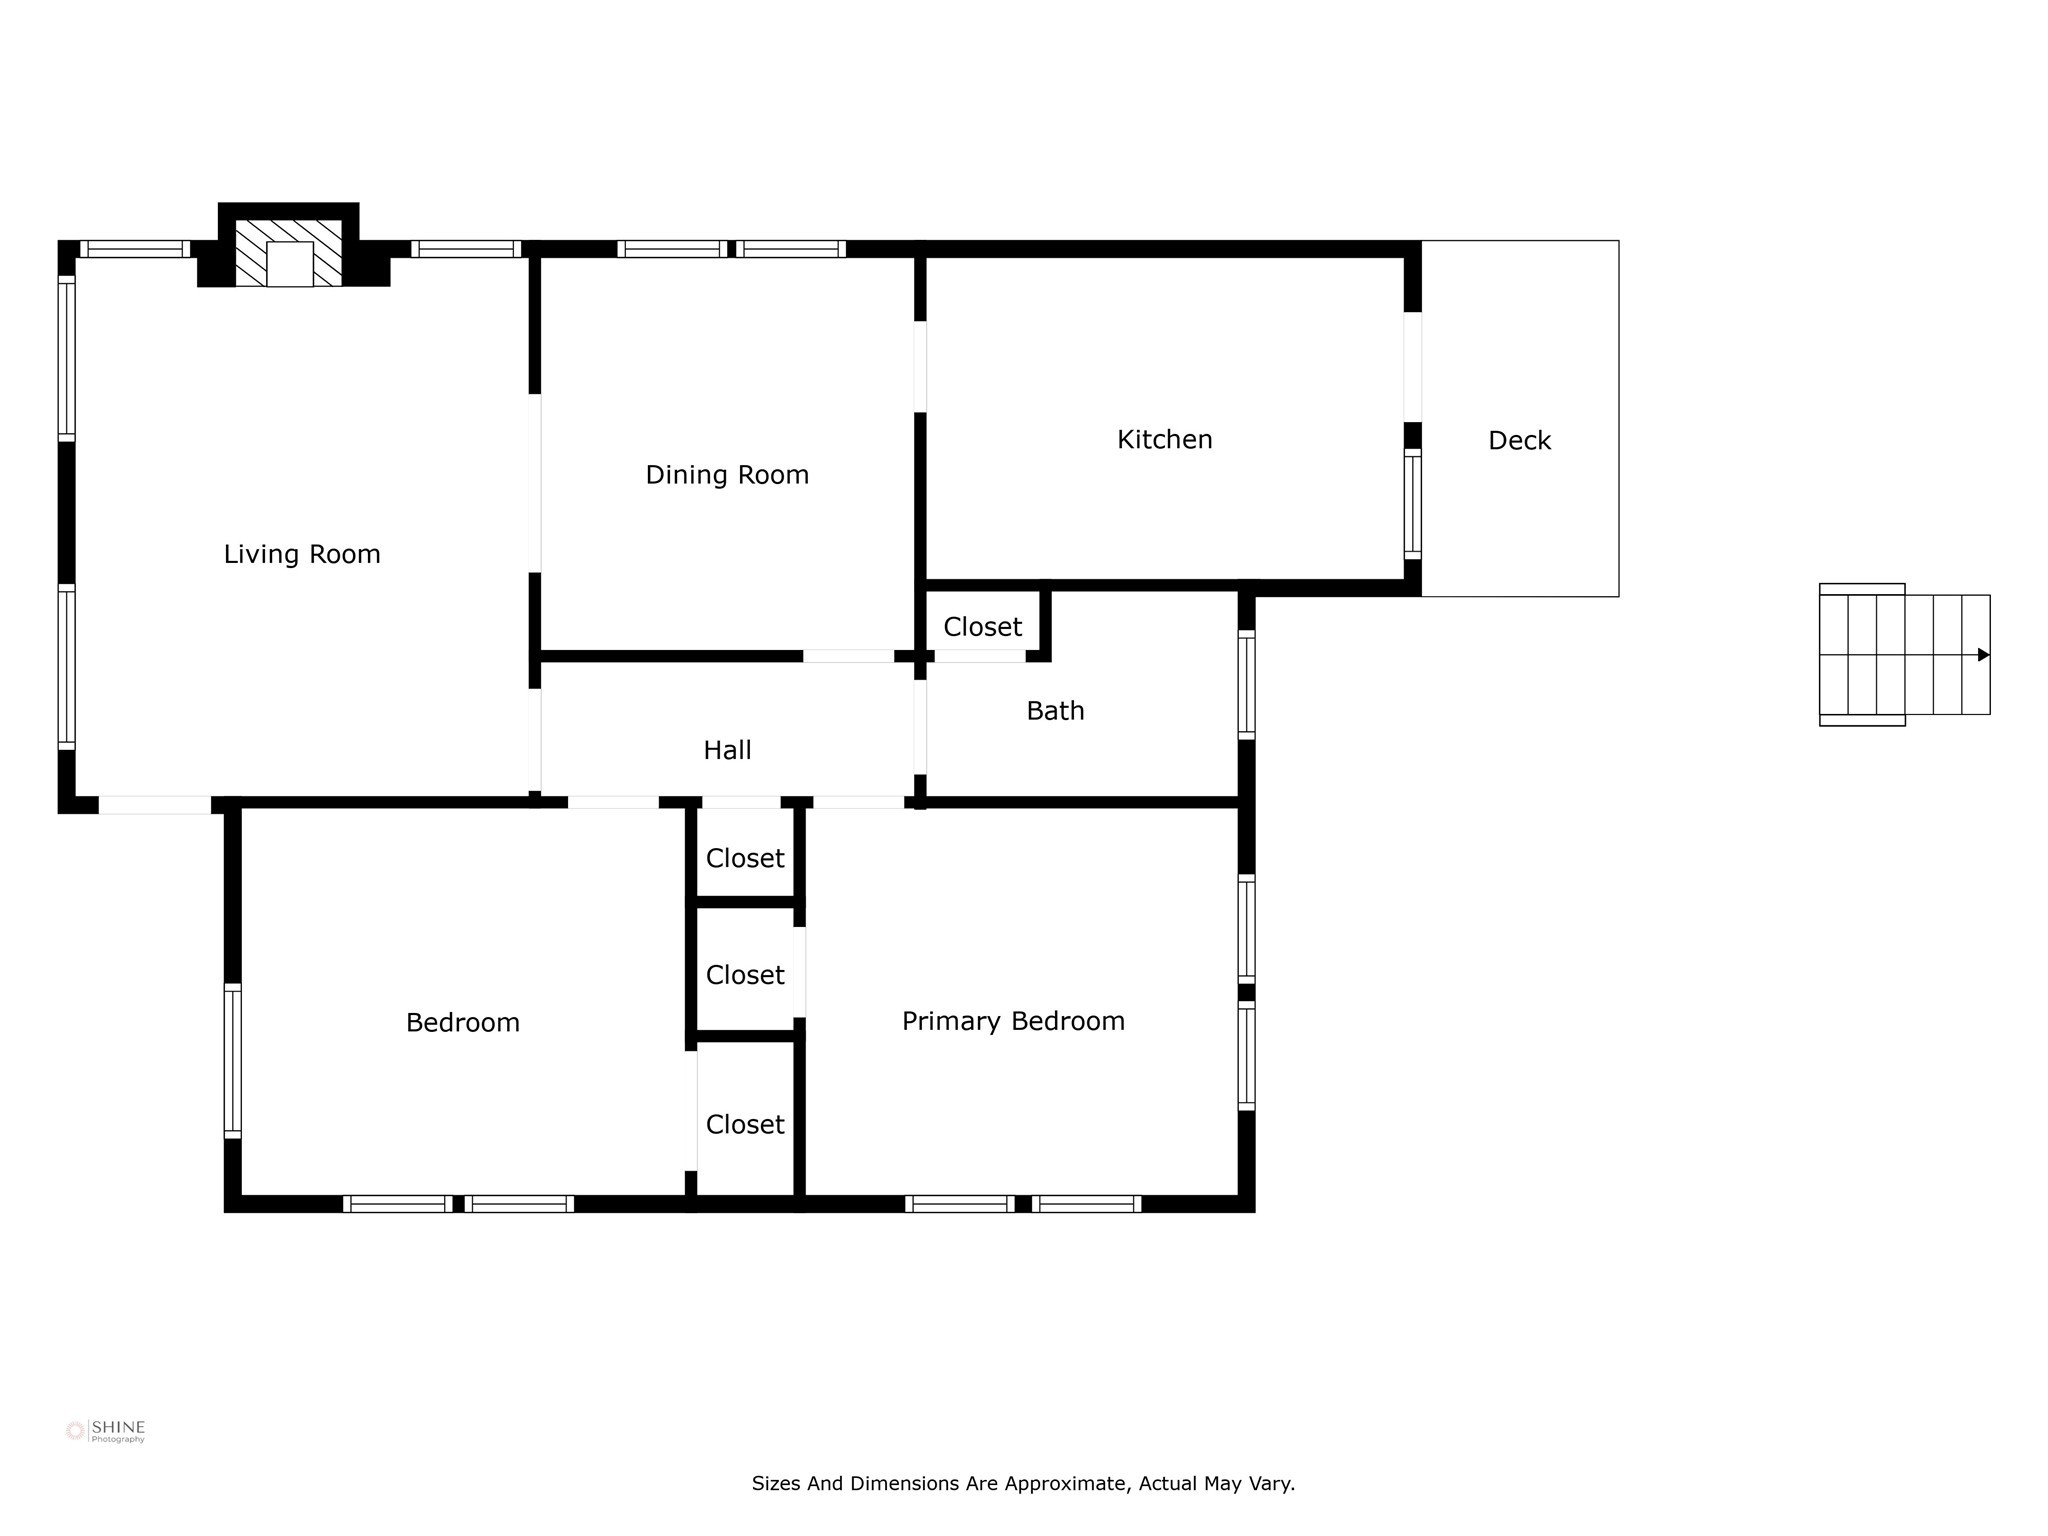 Floor plan of main home.